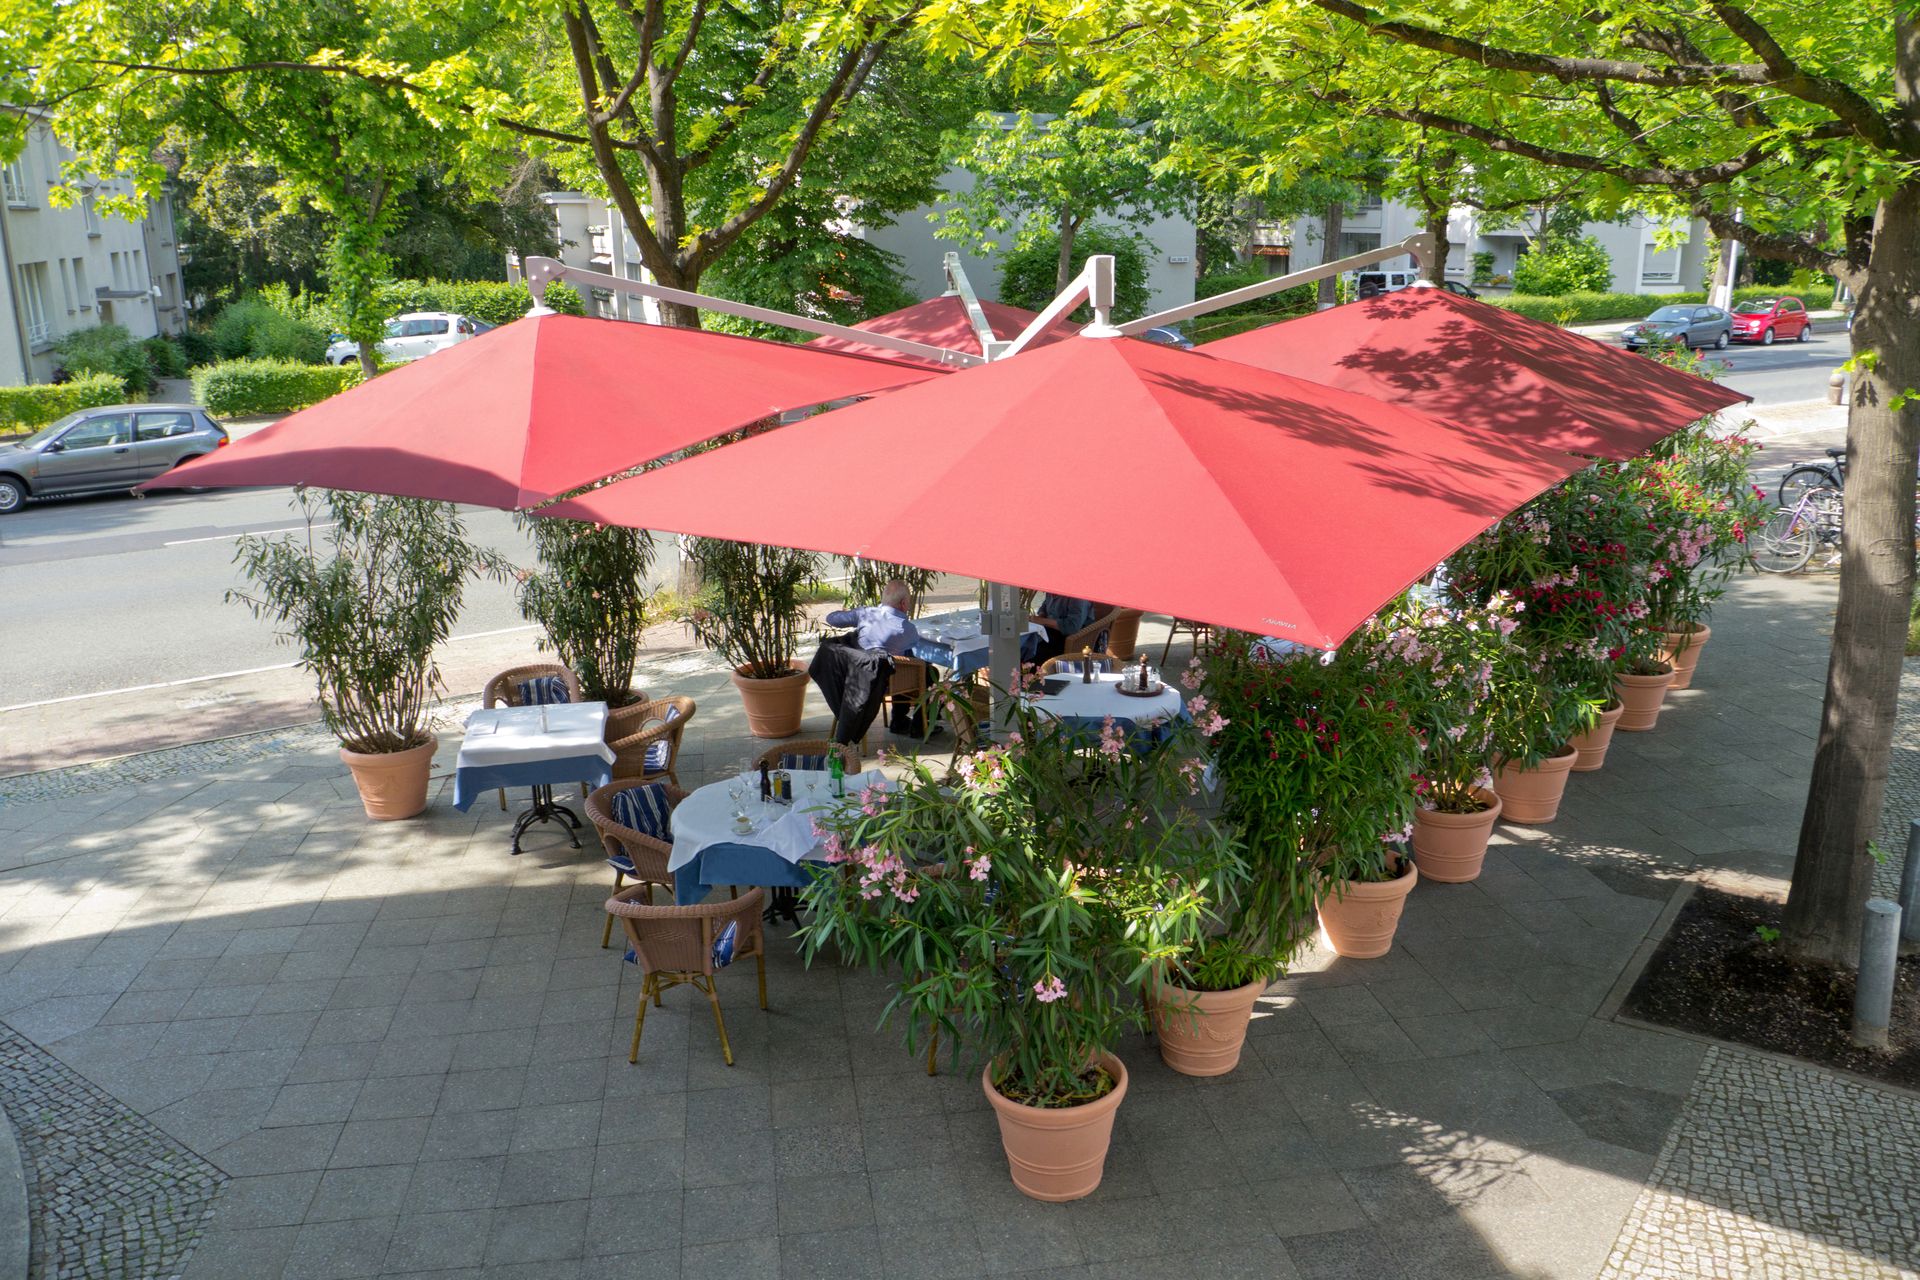 Caravita Sonnenschirme Amalfi QUADRO, vier Schirme mit roter Tuchbespannung und einem Arm aufgestellt in einem gastromischen Außenbereich. LS Sonnenschutz Produktseite Sonnenschirme.